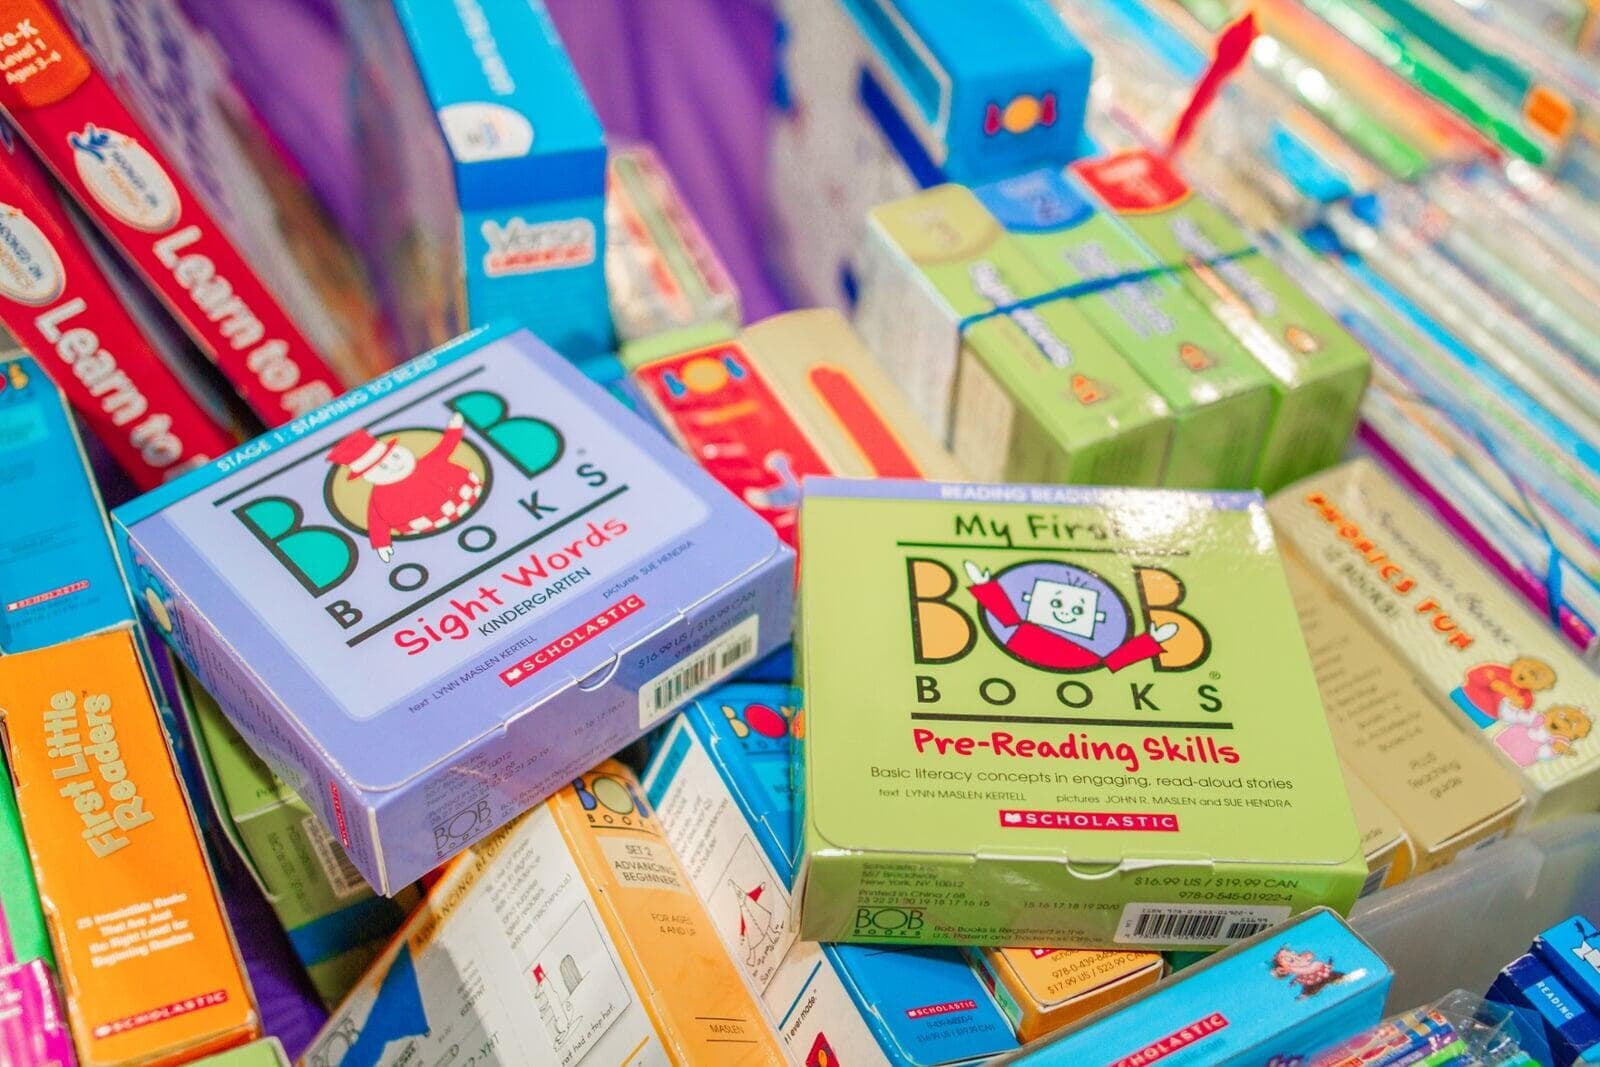 BOB books in bins.